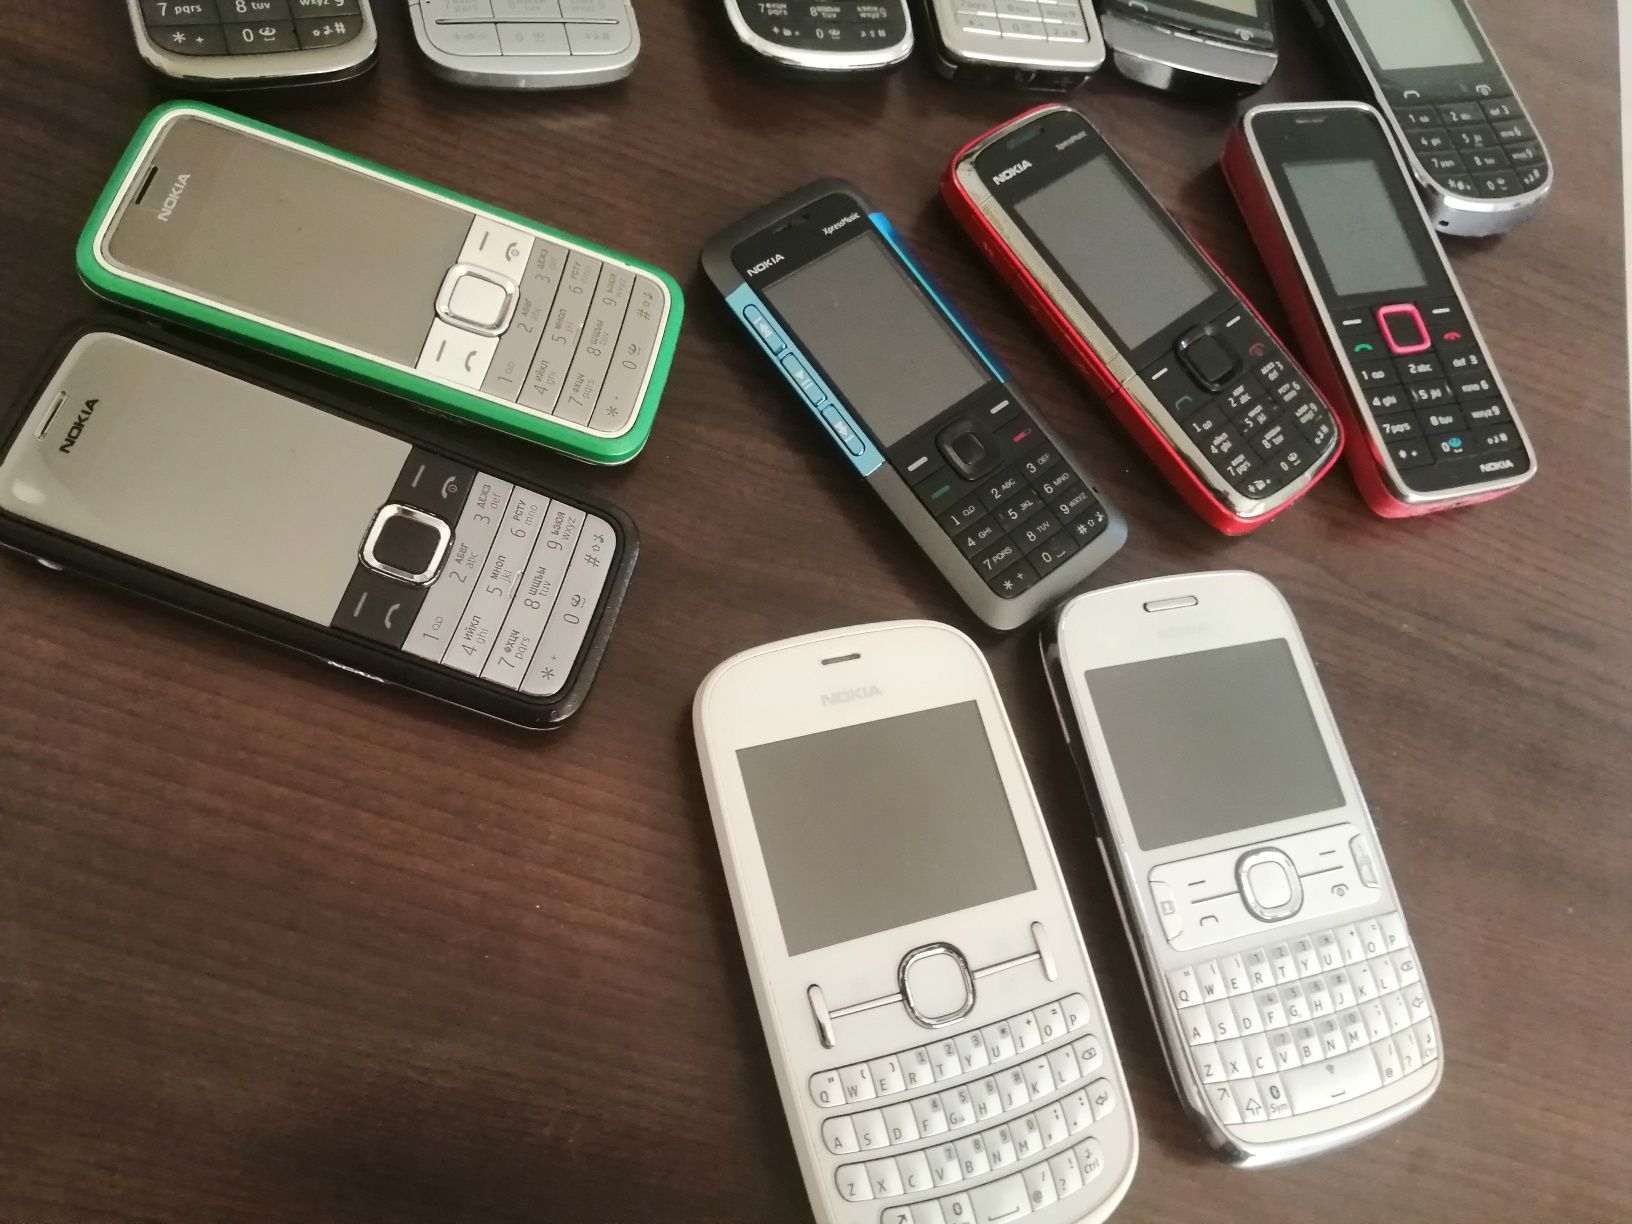 Nokia C5, C3, 2700,6300, 306, 202, 7310c,5310,5130,3500,302,201